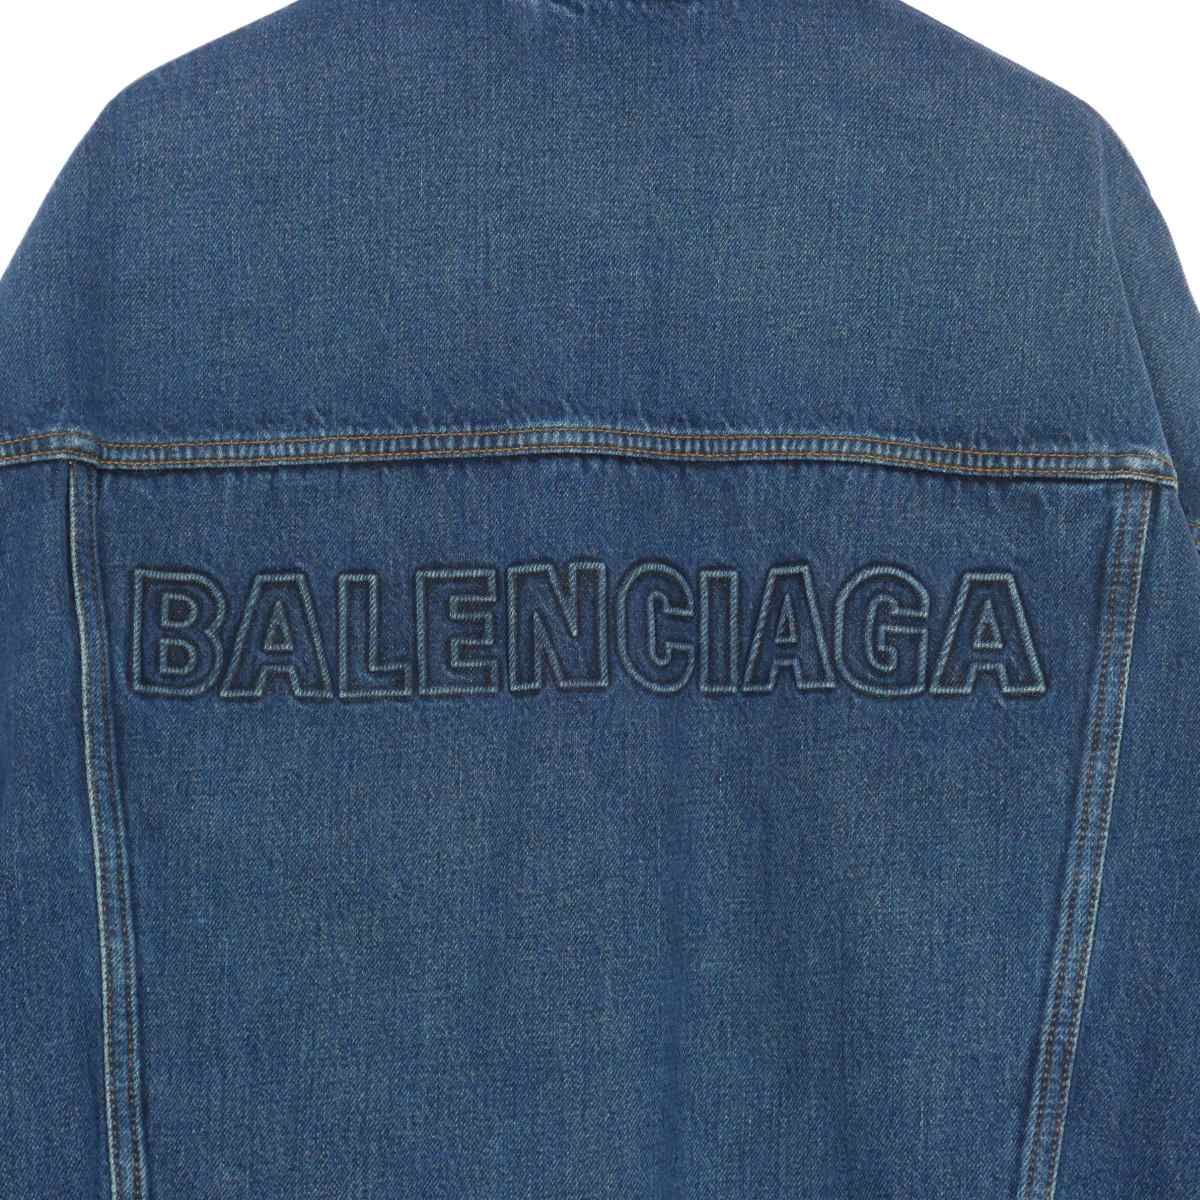 バレンシアガ BALENCIAGA バッグロゴ オーバーサイズ Gジャン デニムジャケット 34 インディゴ 620750 国内正規